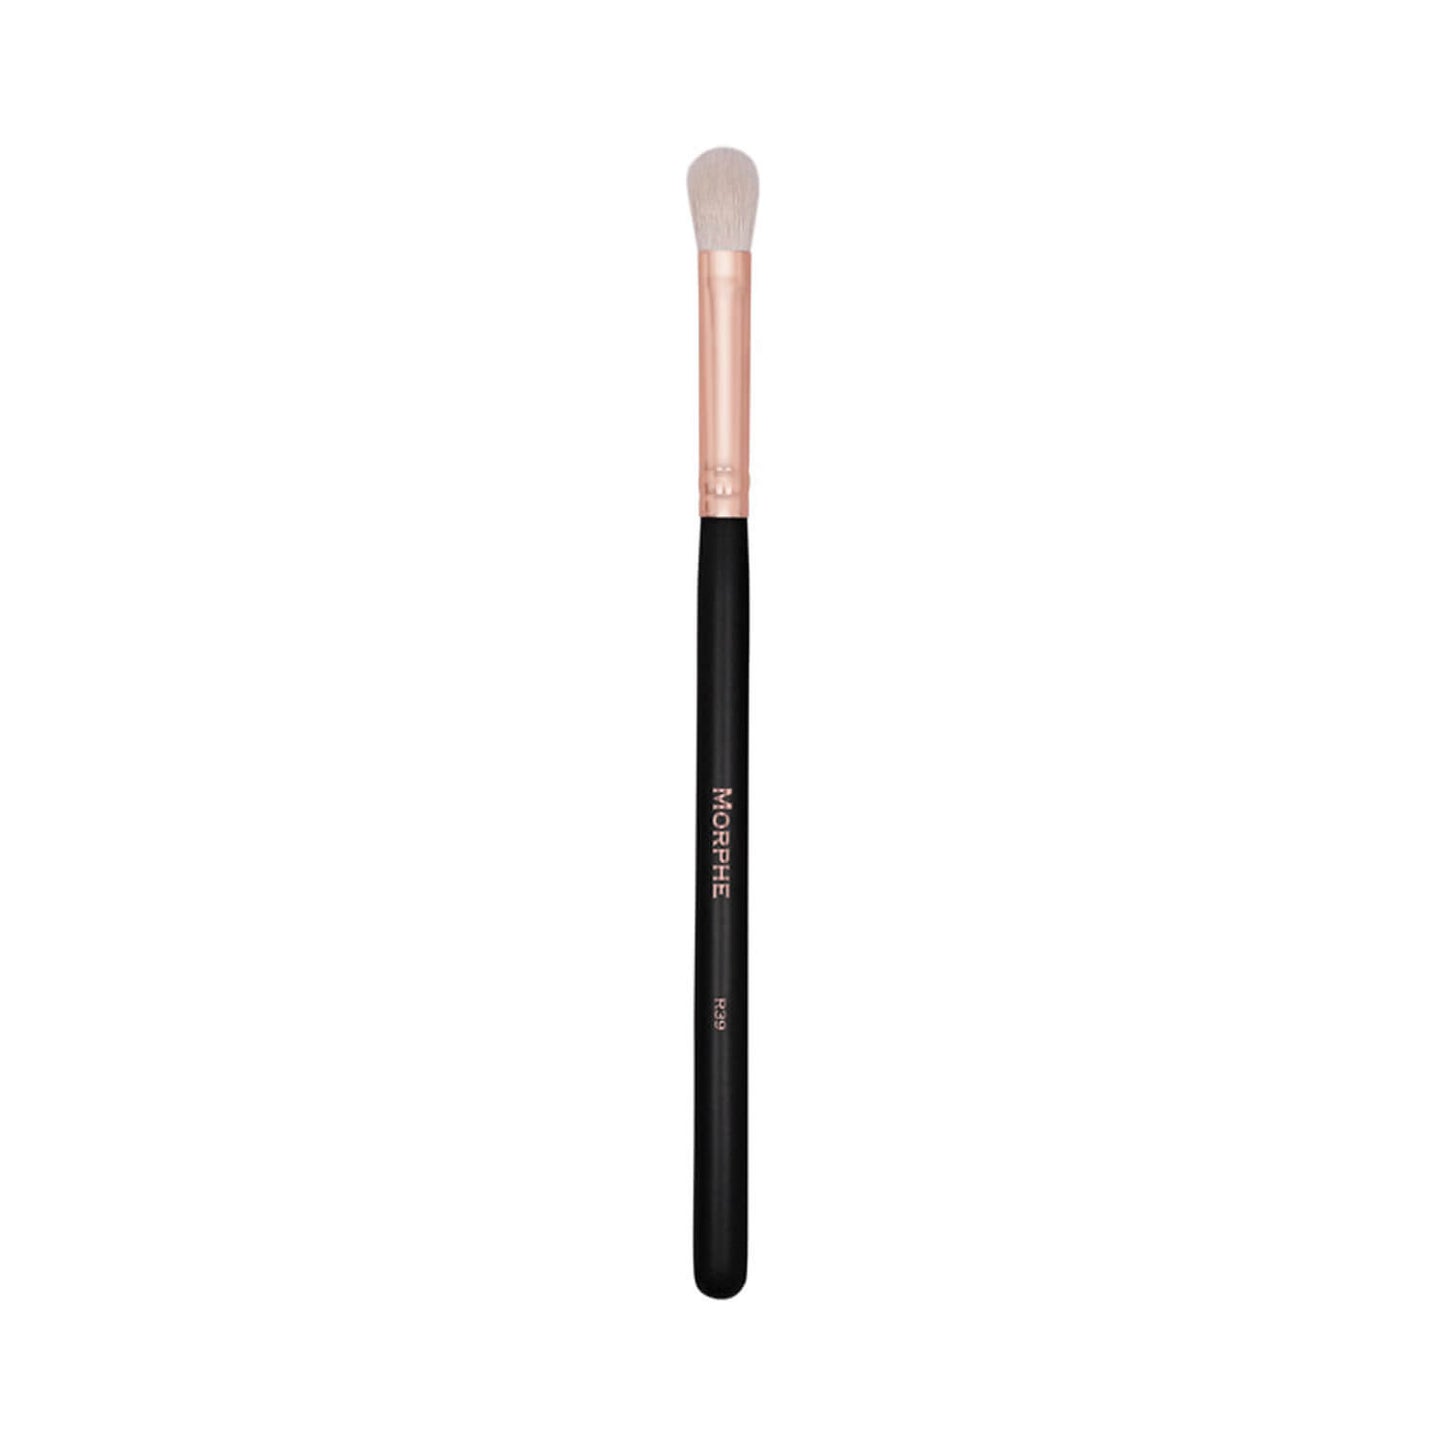 Morphe Cosmetics R39 Pro Firm Blending Brush